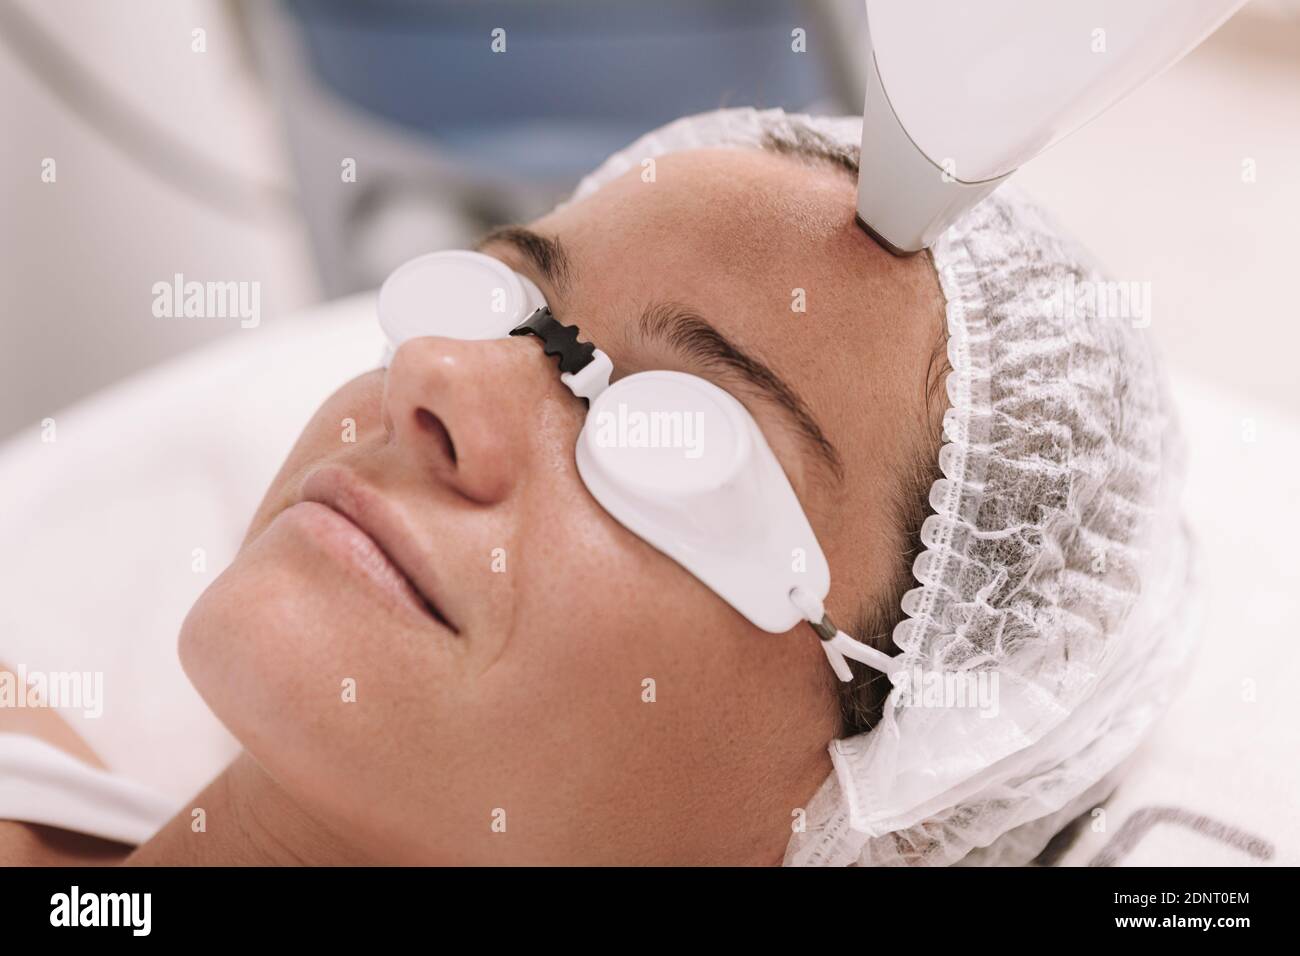 Gafas para depilacion laser fotografías e imágenes de alta resolución -  Página 9 - Alamy